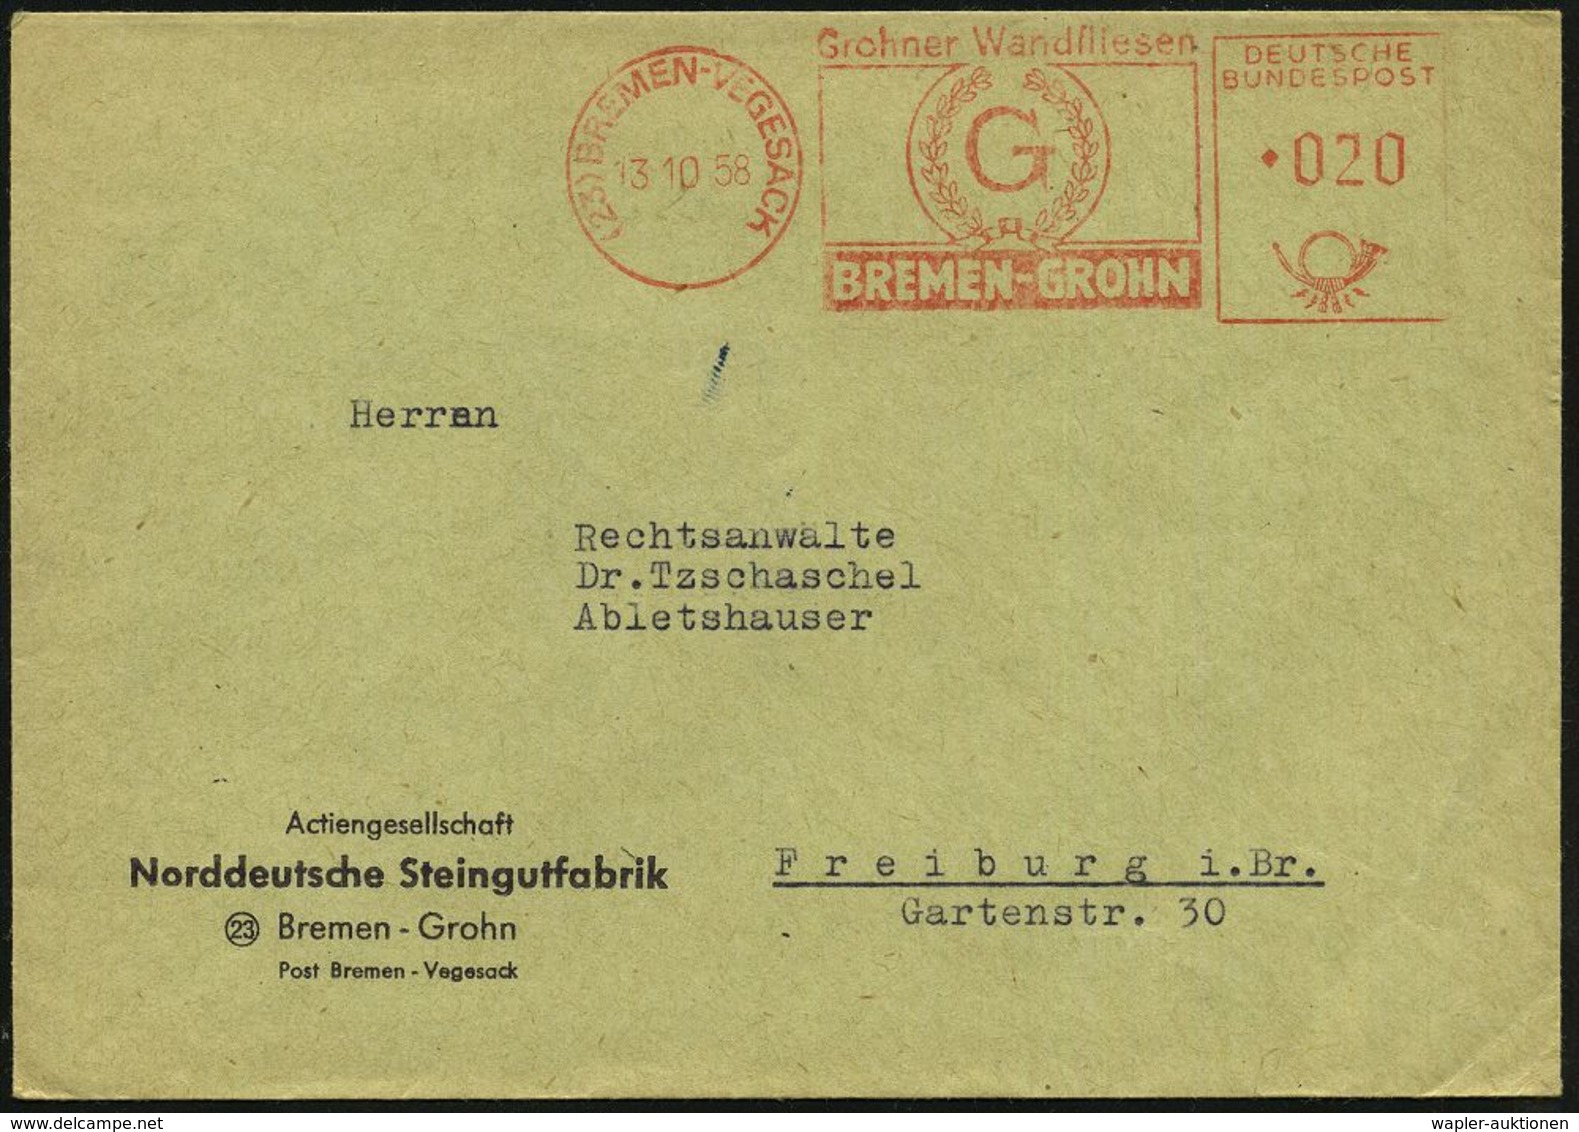 TON / STEINGUT / KACHELOFEN : (23) BREMEN-VEGESACK/ Grohner Wandfliesen 1958 (13.10.) AFS (Logo) Firmen-Bf: Norddeutsche - Porcelaine